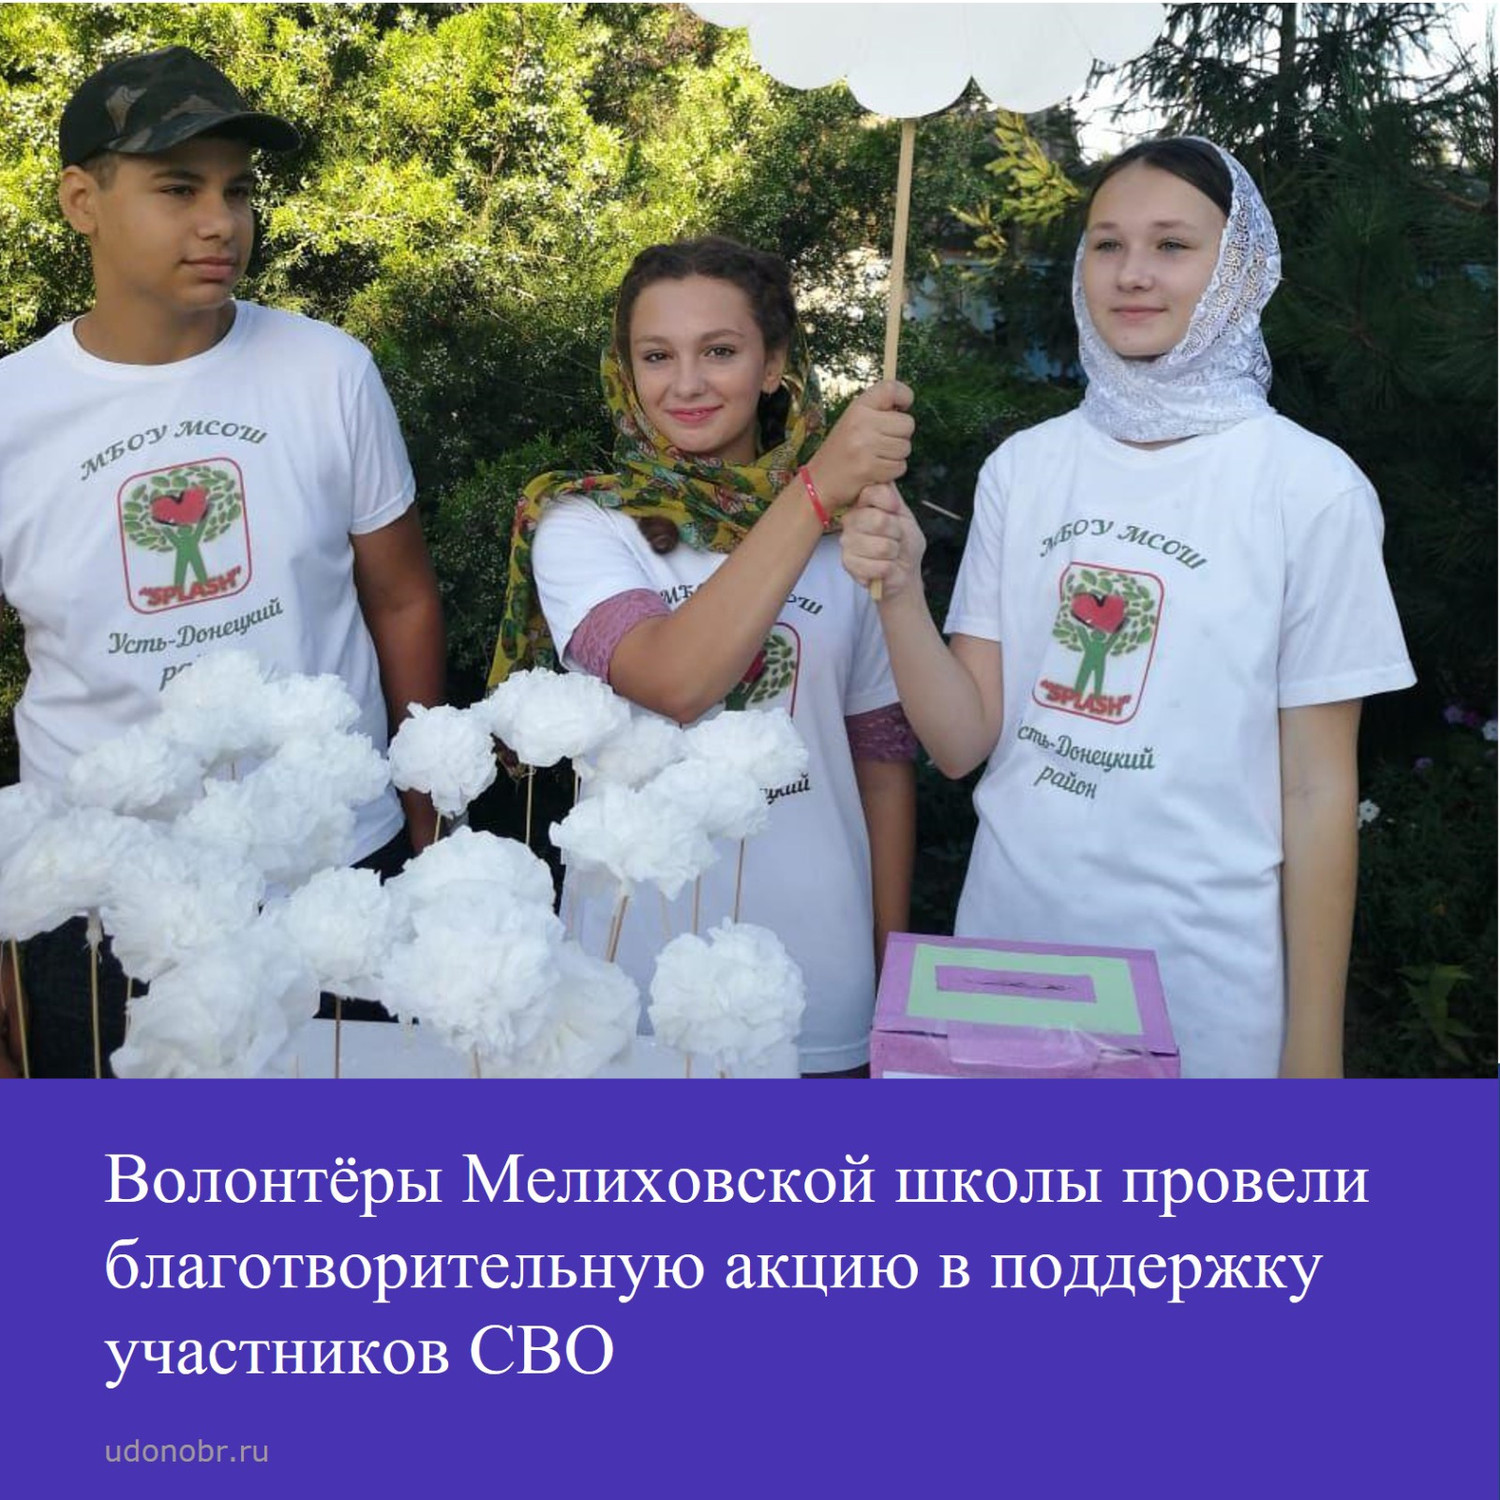 Волонтёры Мелиховской школы провели благотворительную акцию в поддержку участников СВО